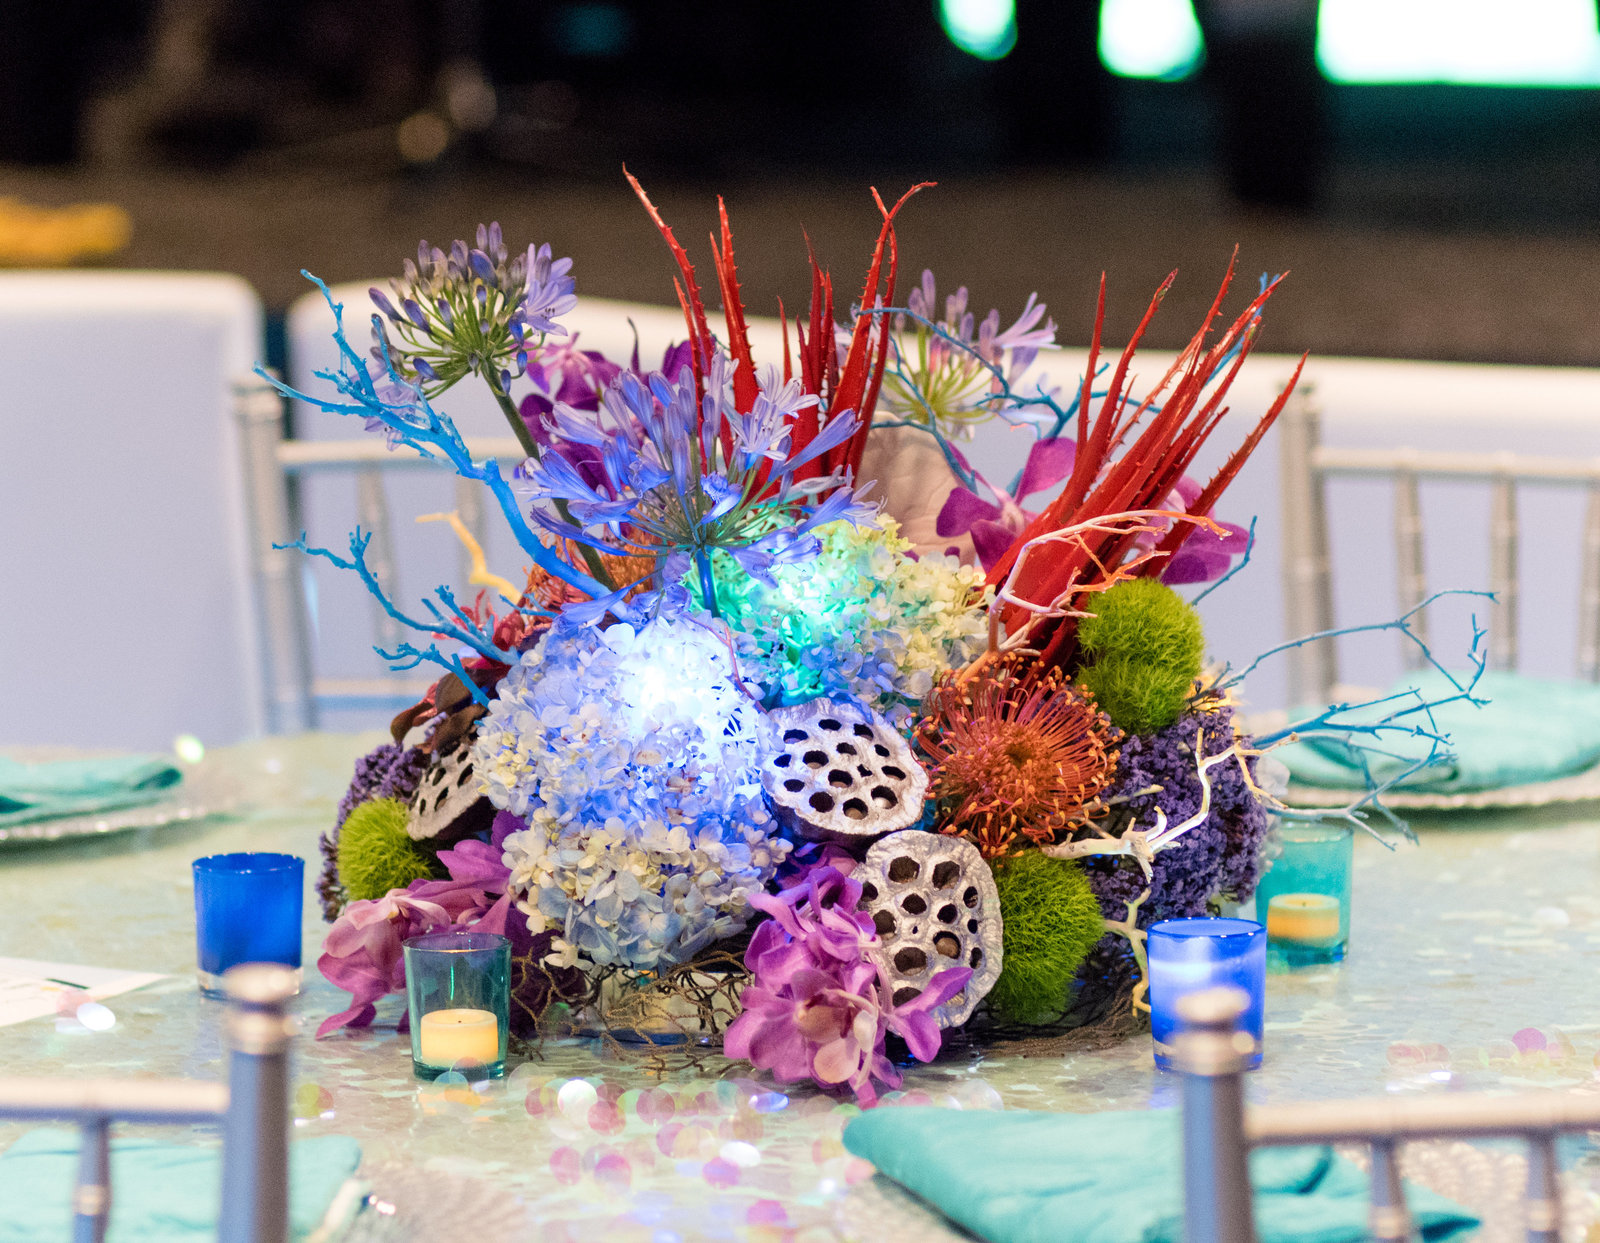 Your-Event-Florist-Arizona-Corporate-Flowers-decor11